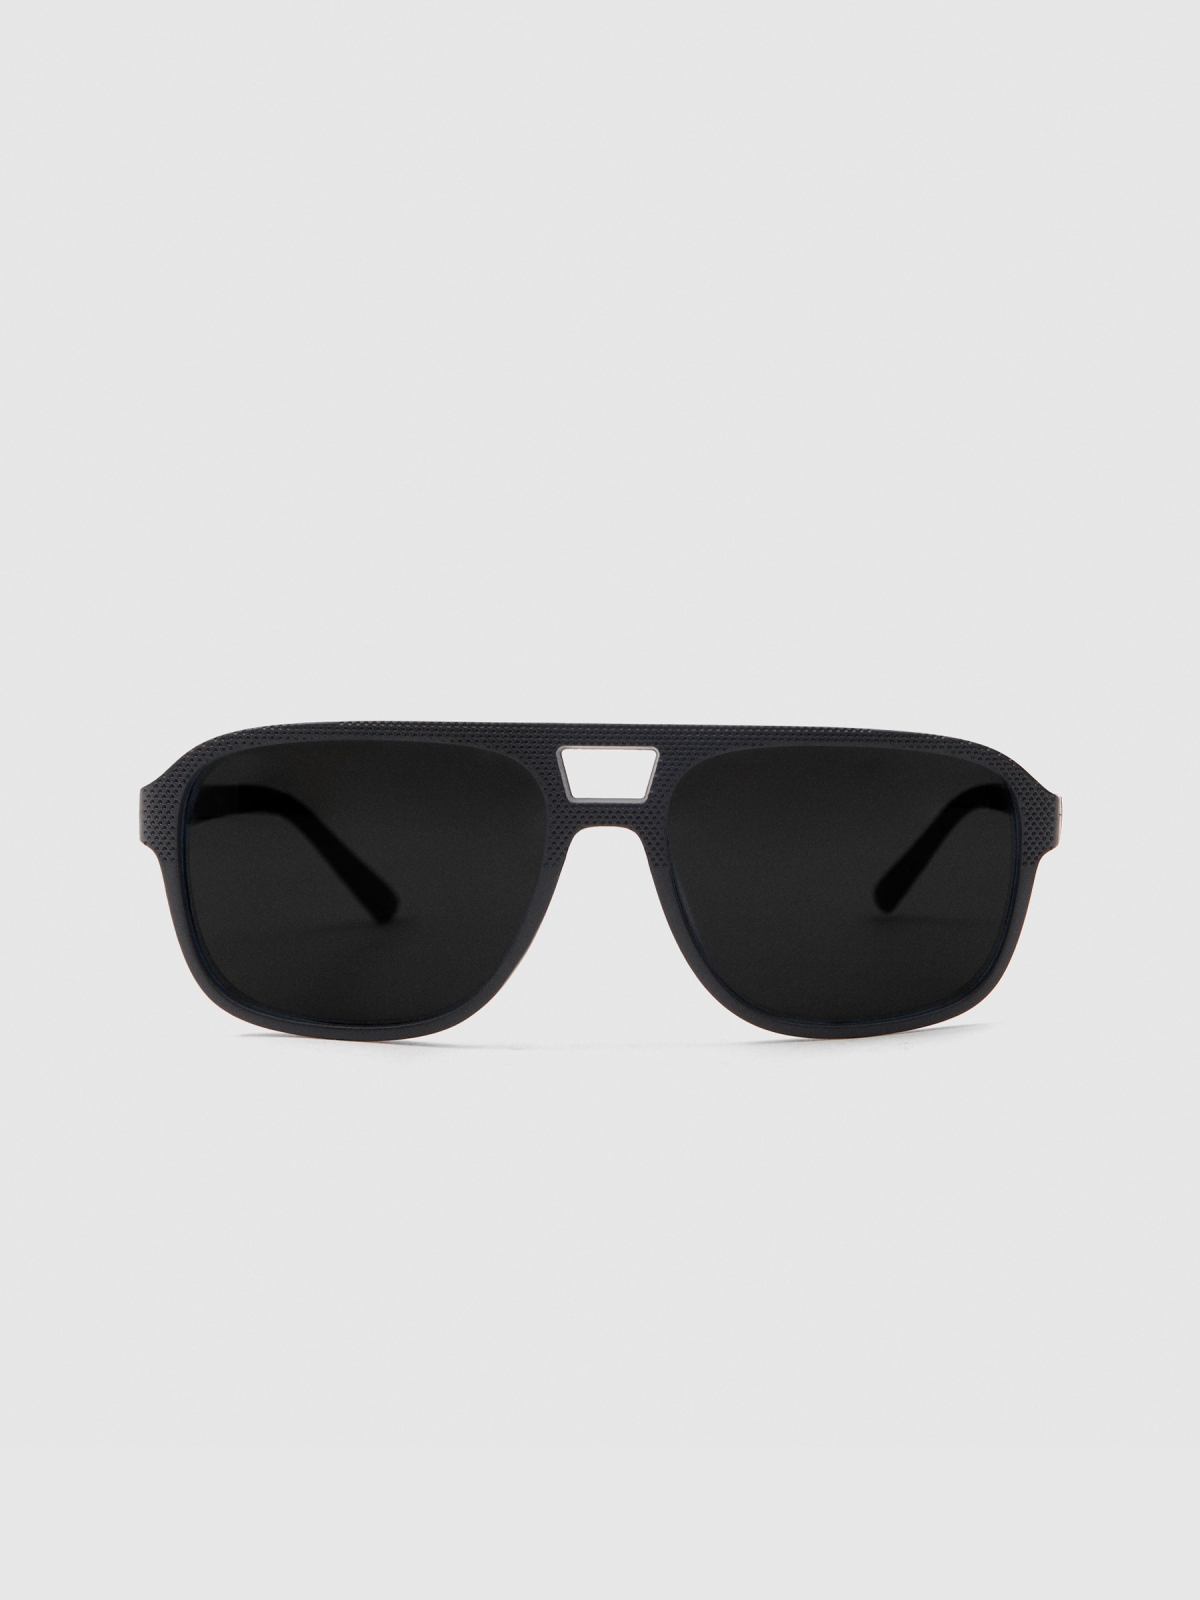 Aviator sunglasses black